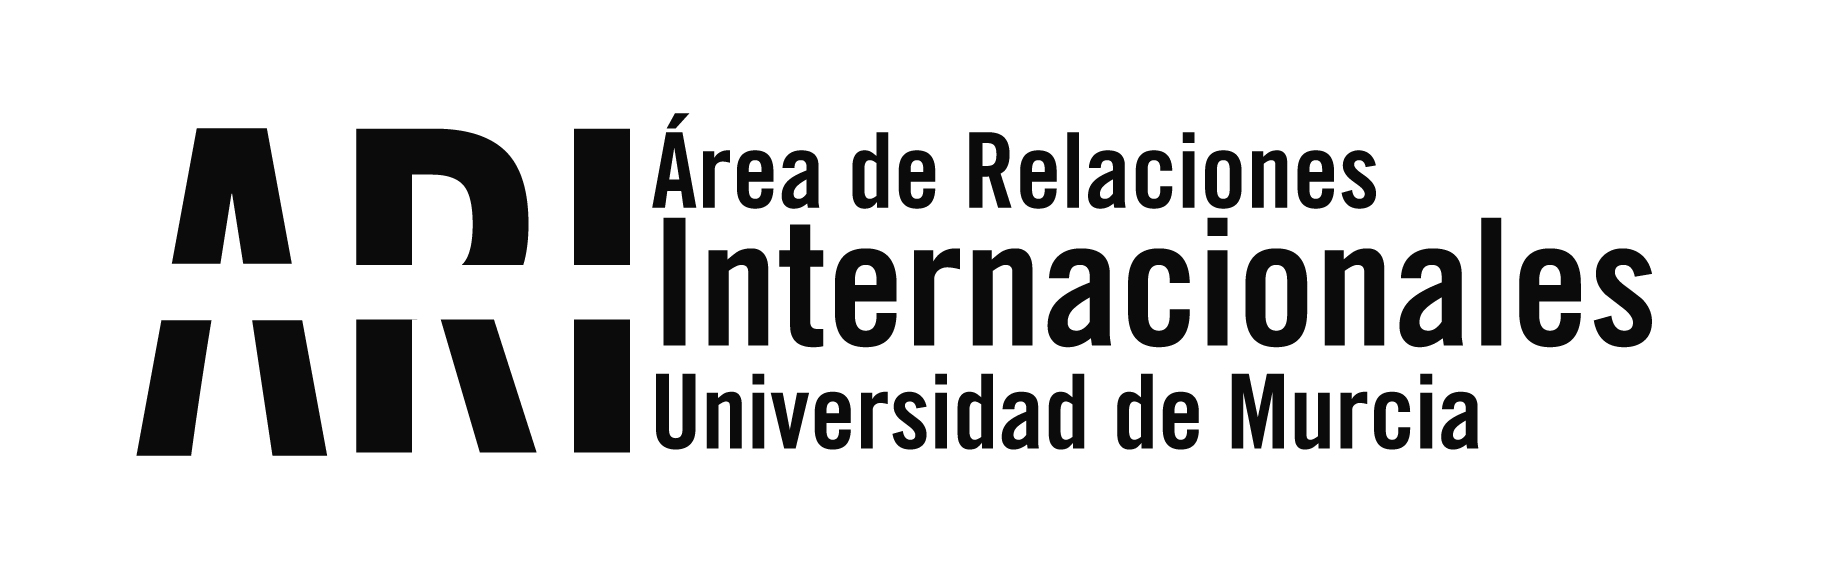 Primeros actos adjudicación convocatoria ILA Intercambio con Latinoamérica 2020-21 vía telefónica - Área de Relaciones Internacionales